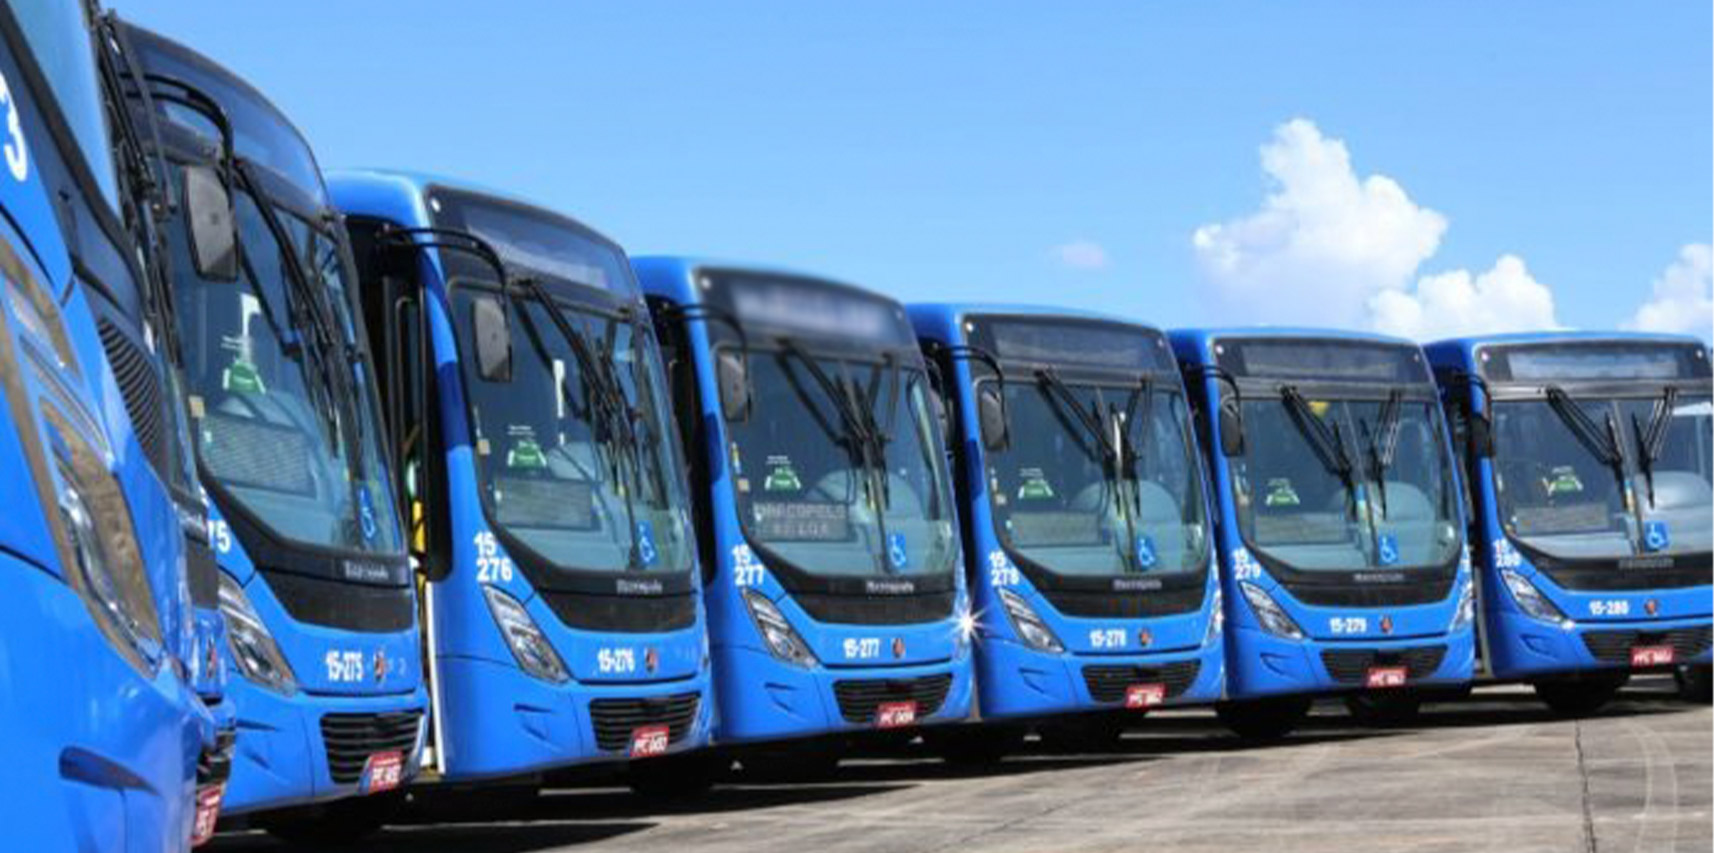 Termo de anuência e abaixo-assinado solicitando linhas de ônibus ligando interior de Vargem Alta a Cachoeiro são entregues à Agersa